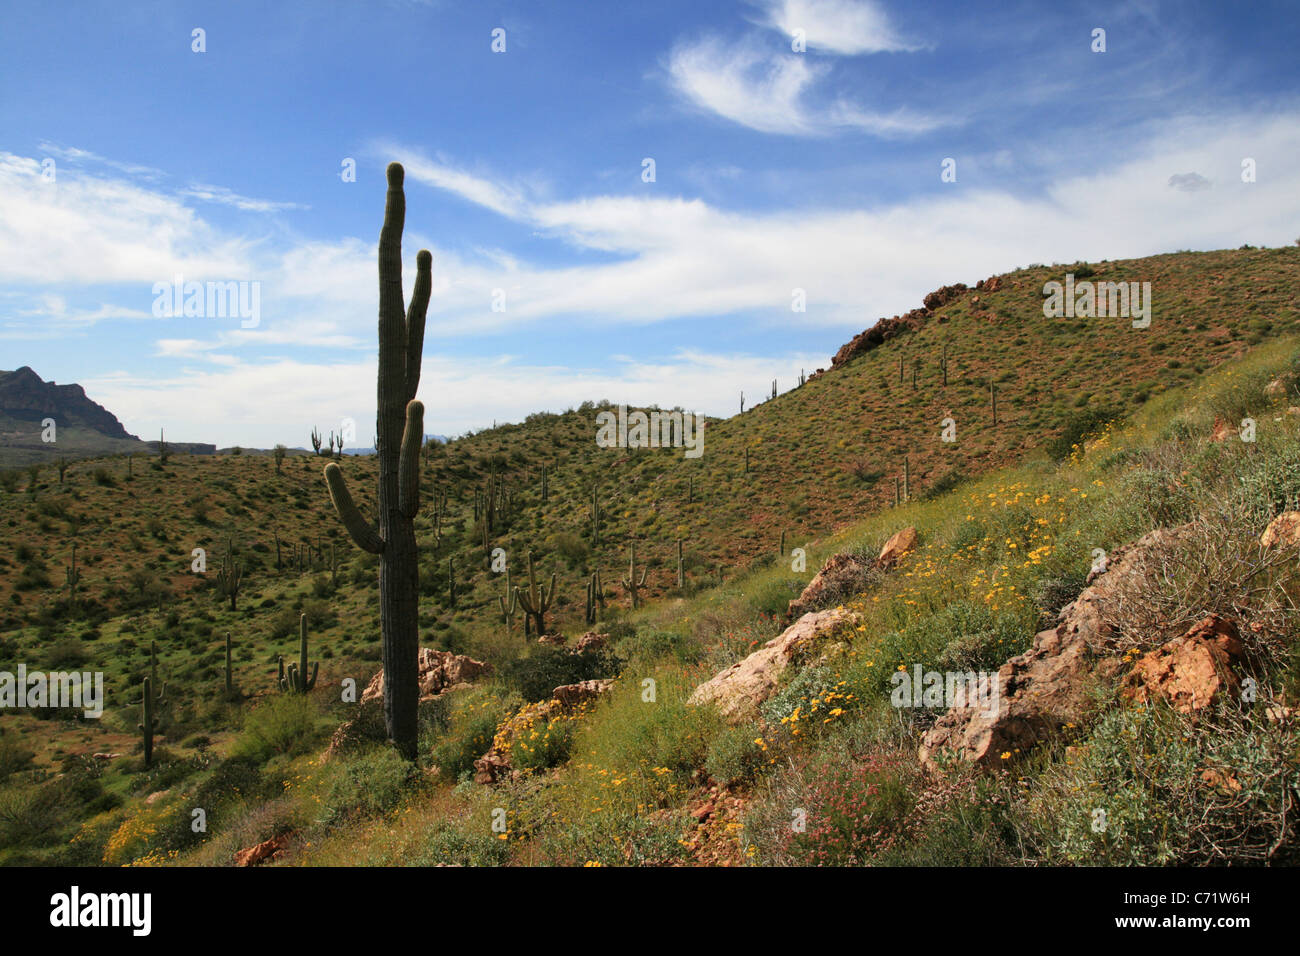 Désert de Sonora au printemps avec des fleurs sauvages et saguaro cactus, Arizona Banque D'Images